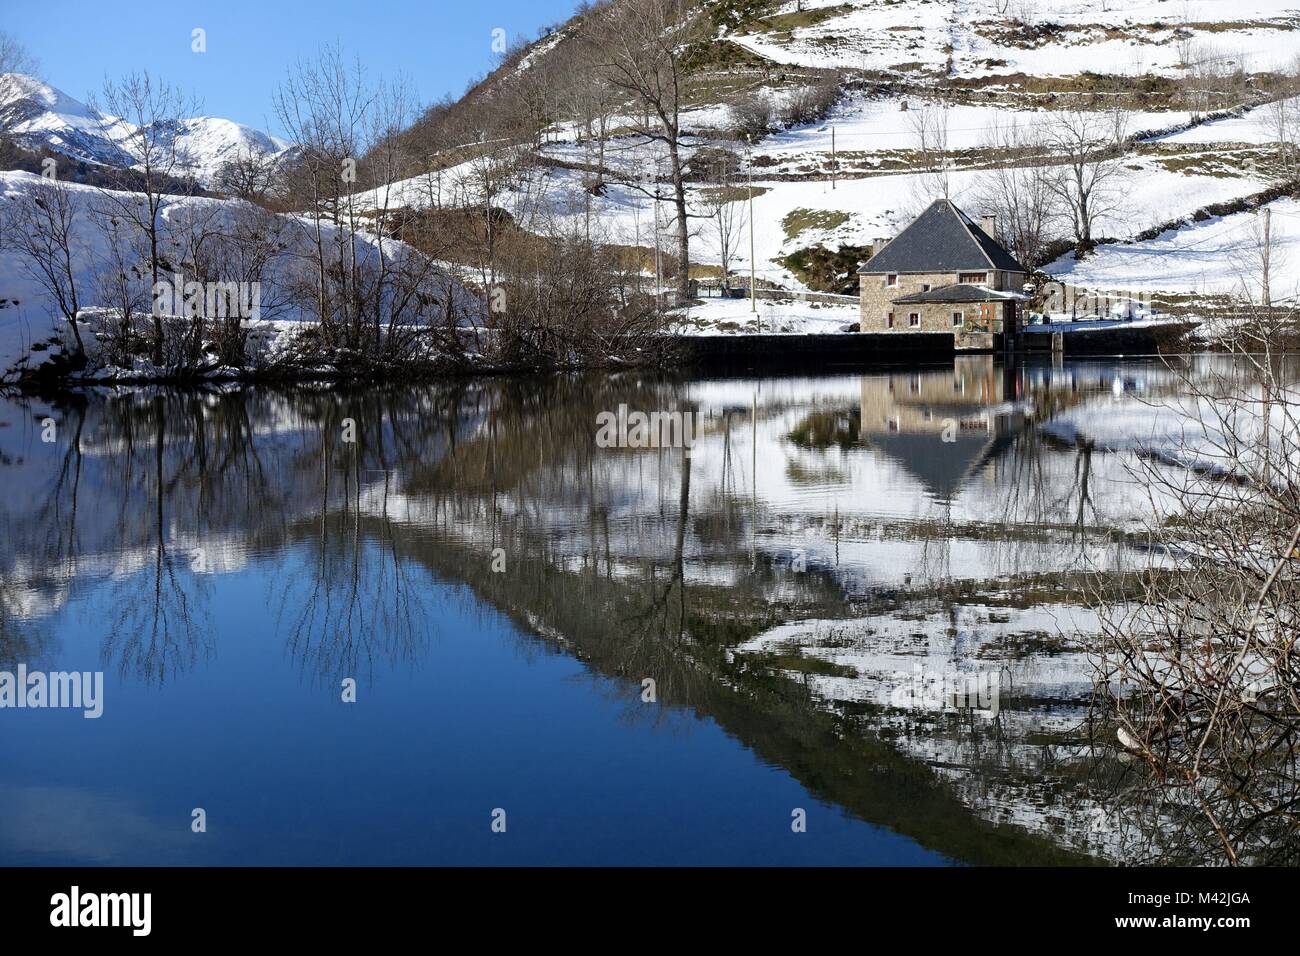 Valle de Lago, le Parc Naturel de Somiedo et réserve de biosphère, Asturias, Espagne Banque D'Images